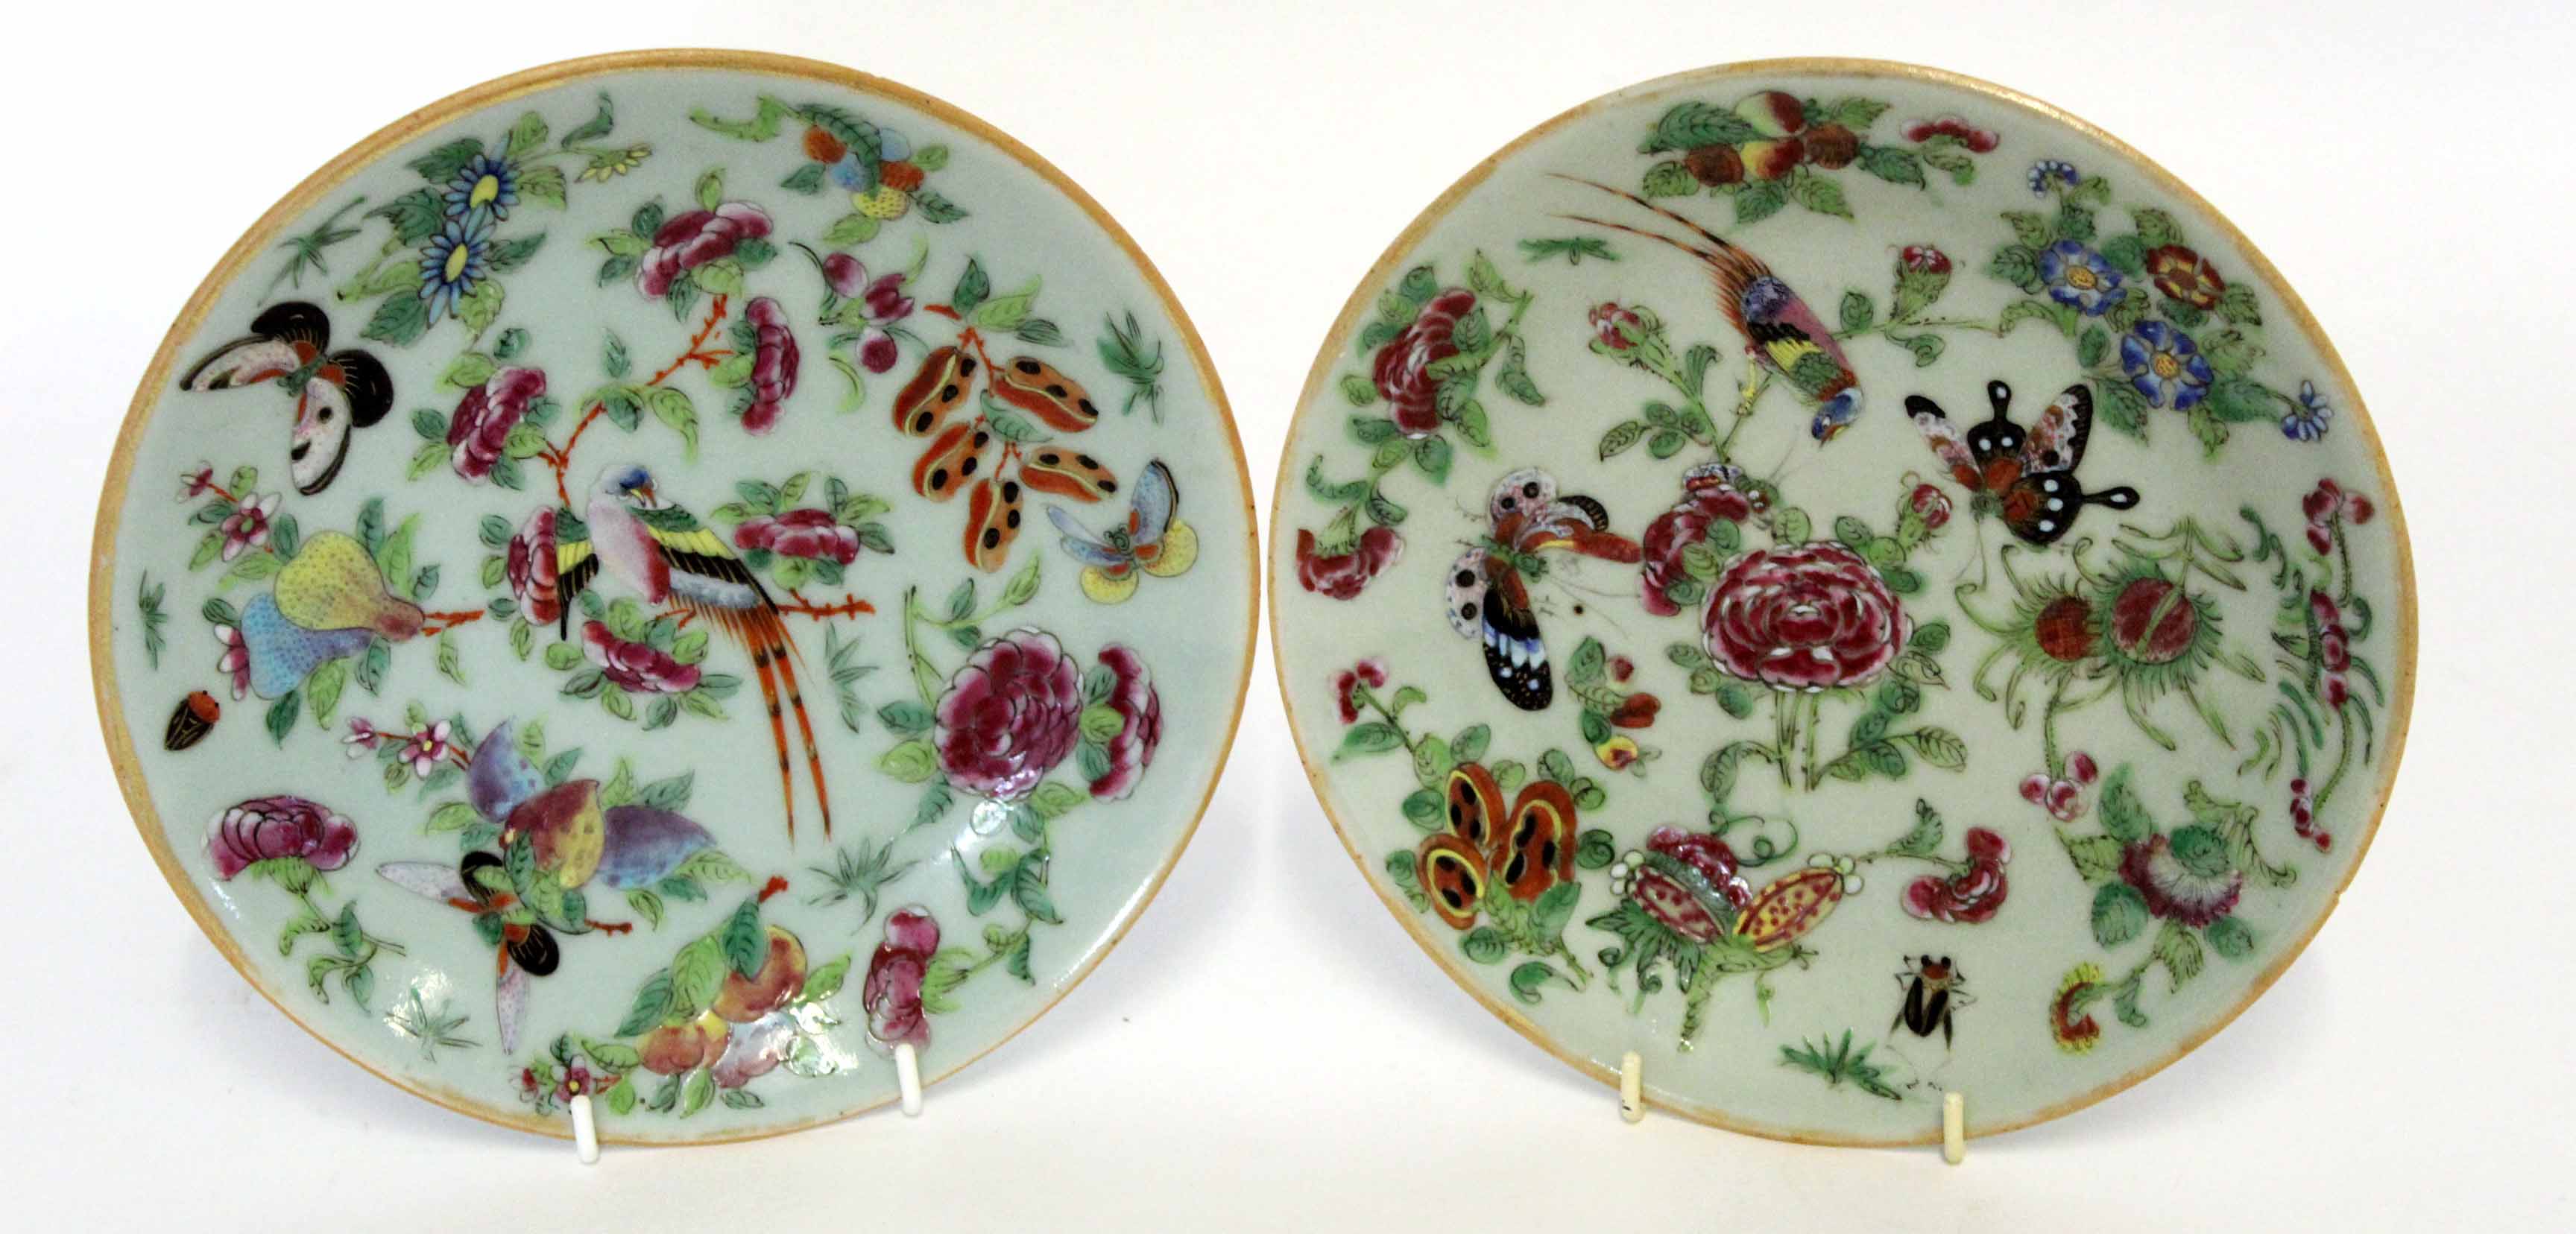 Pair of late 19th century Cantonese famille rose plates, 19cm diam